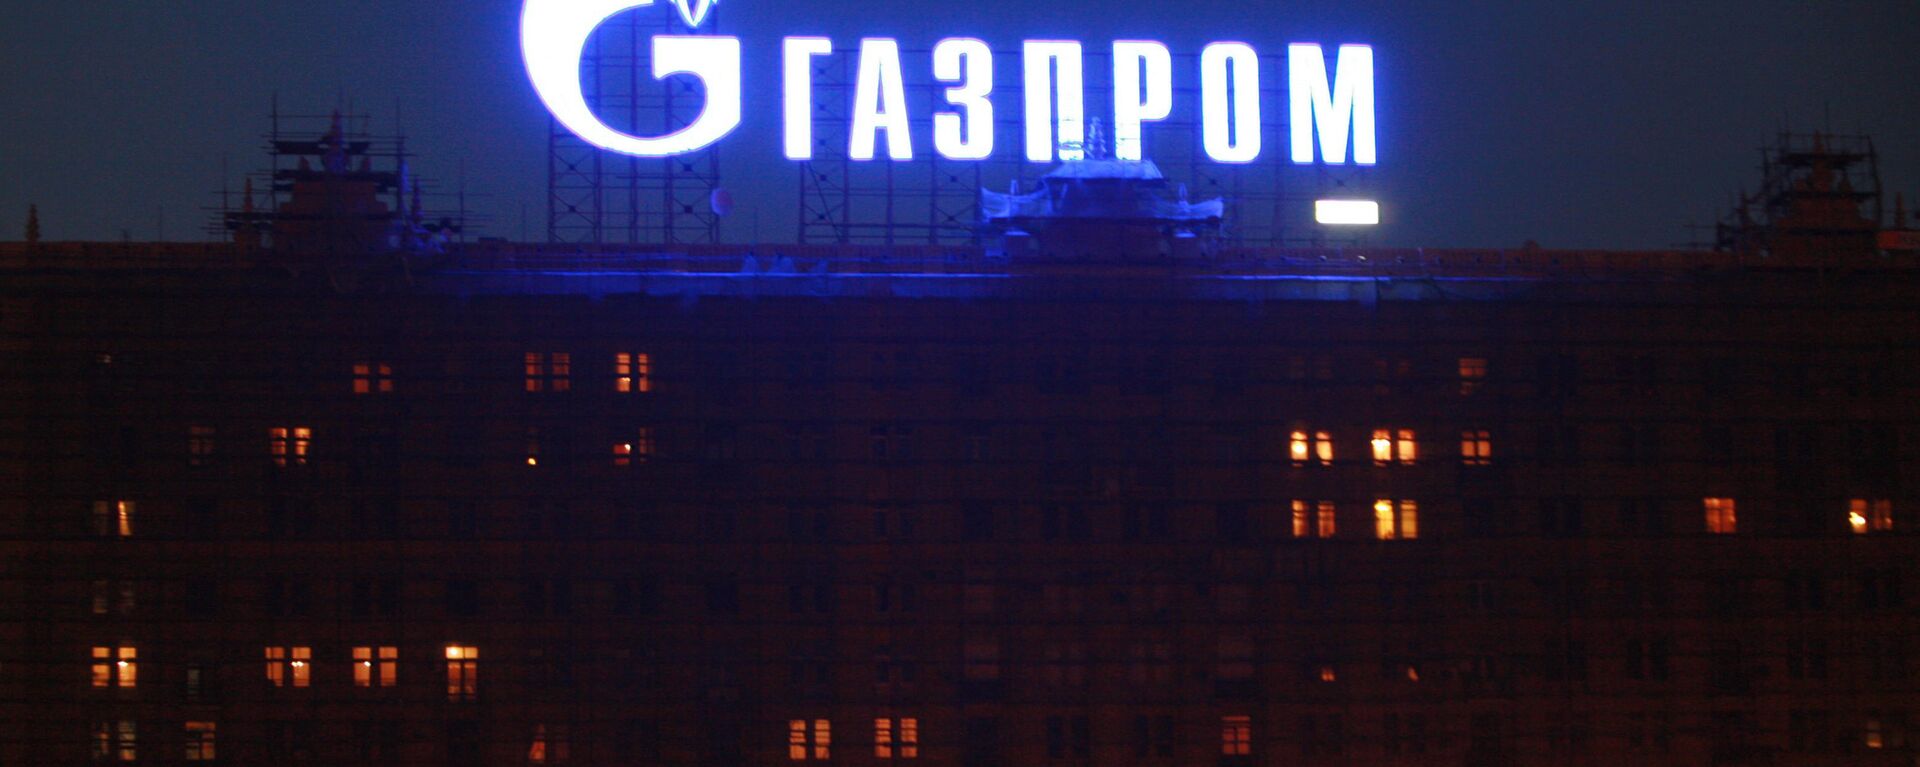 Реклама ОАОГазпром в Москве - Sputnik International, 1920, 25.12.2021